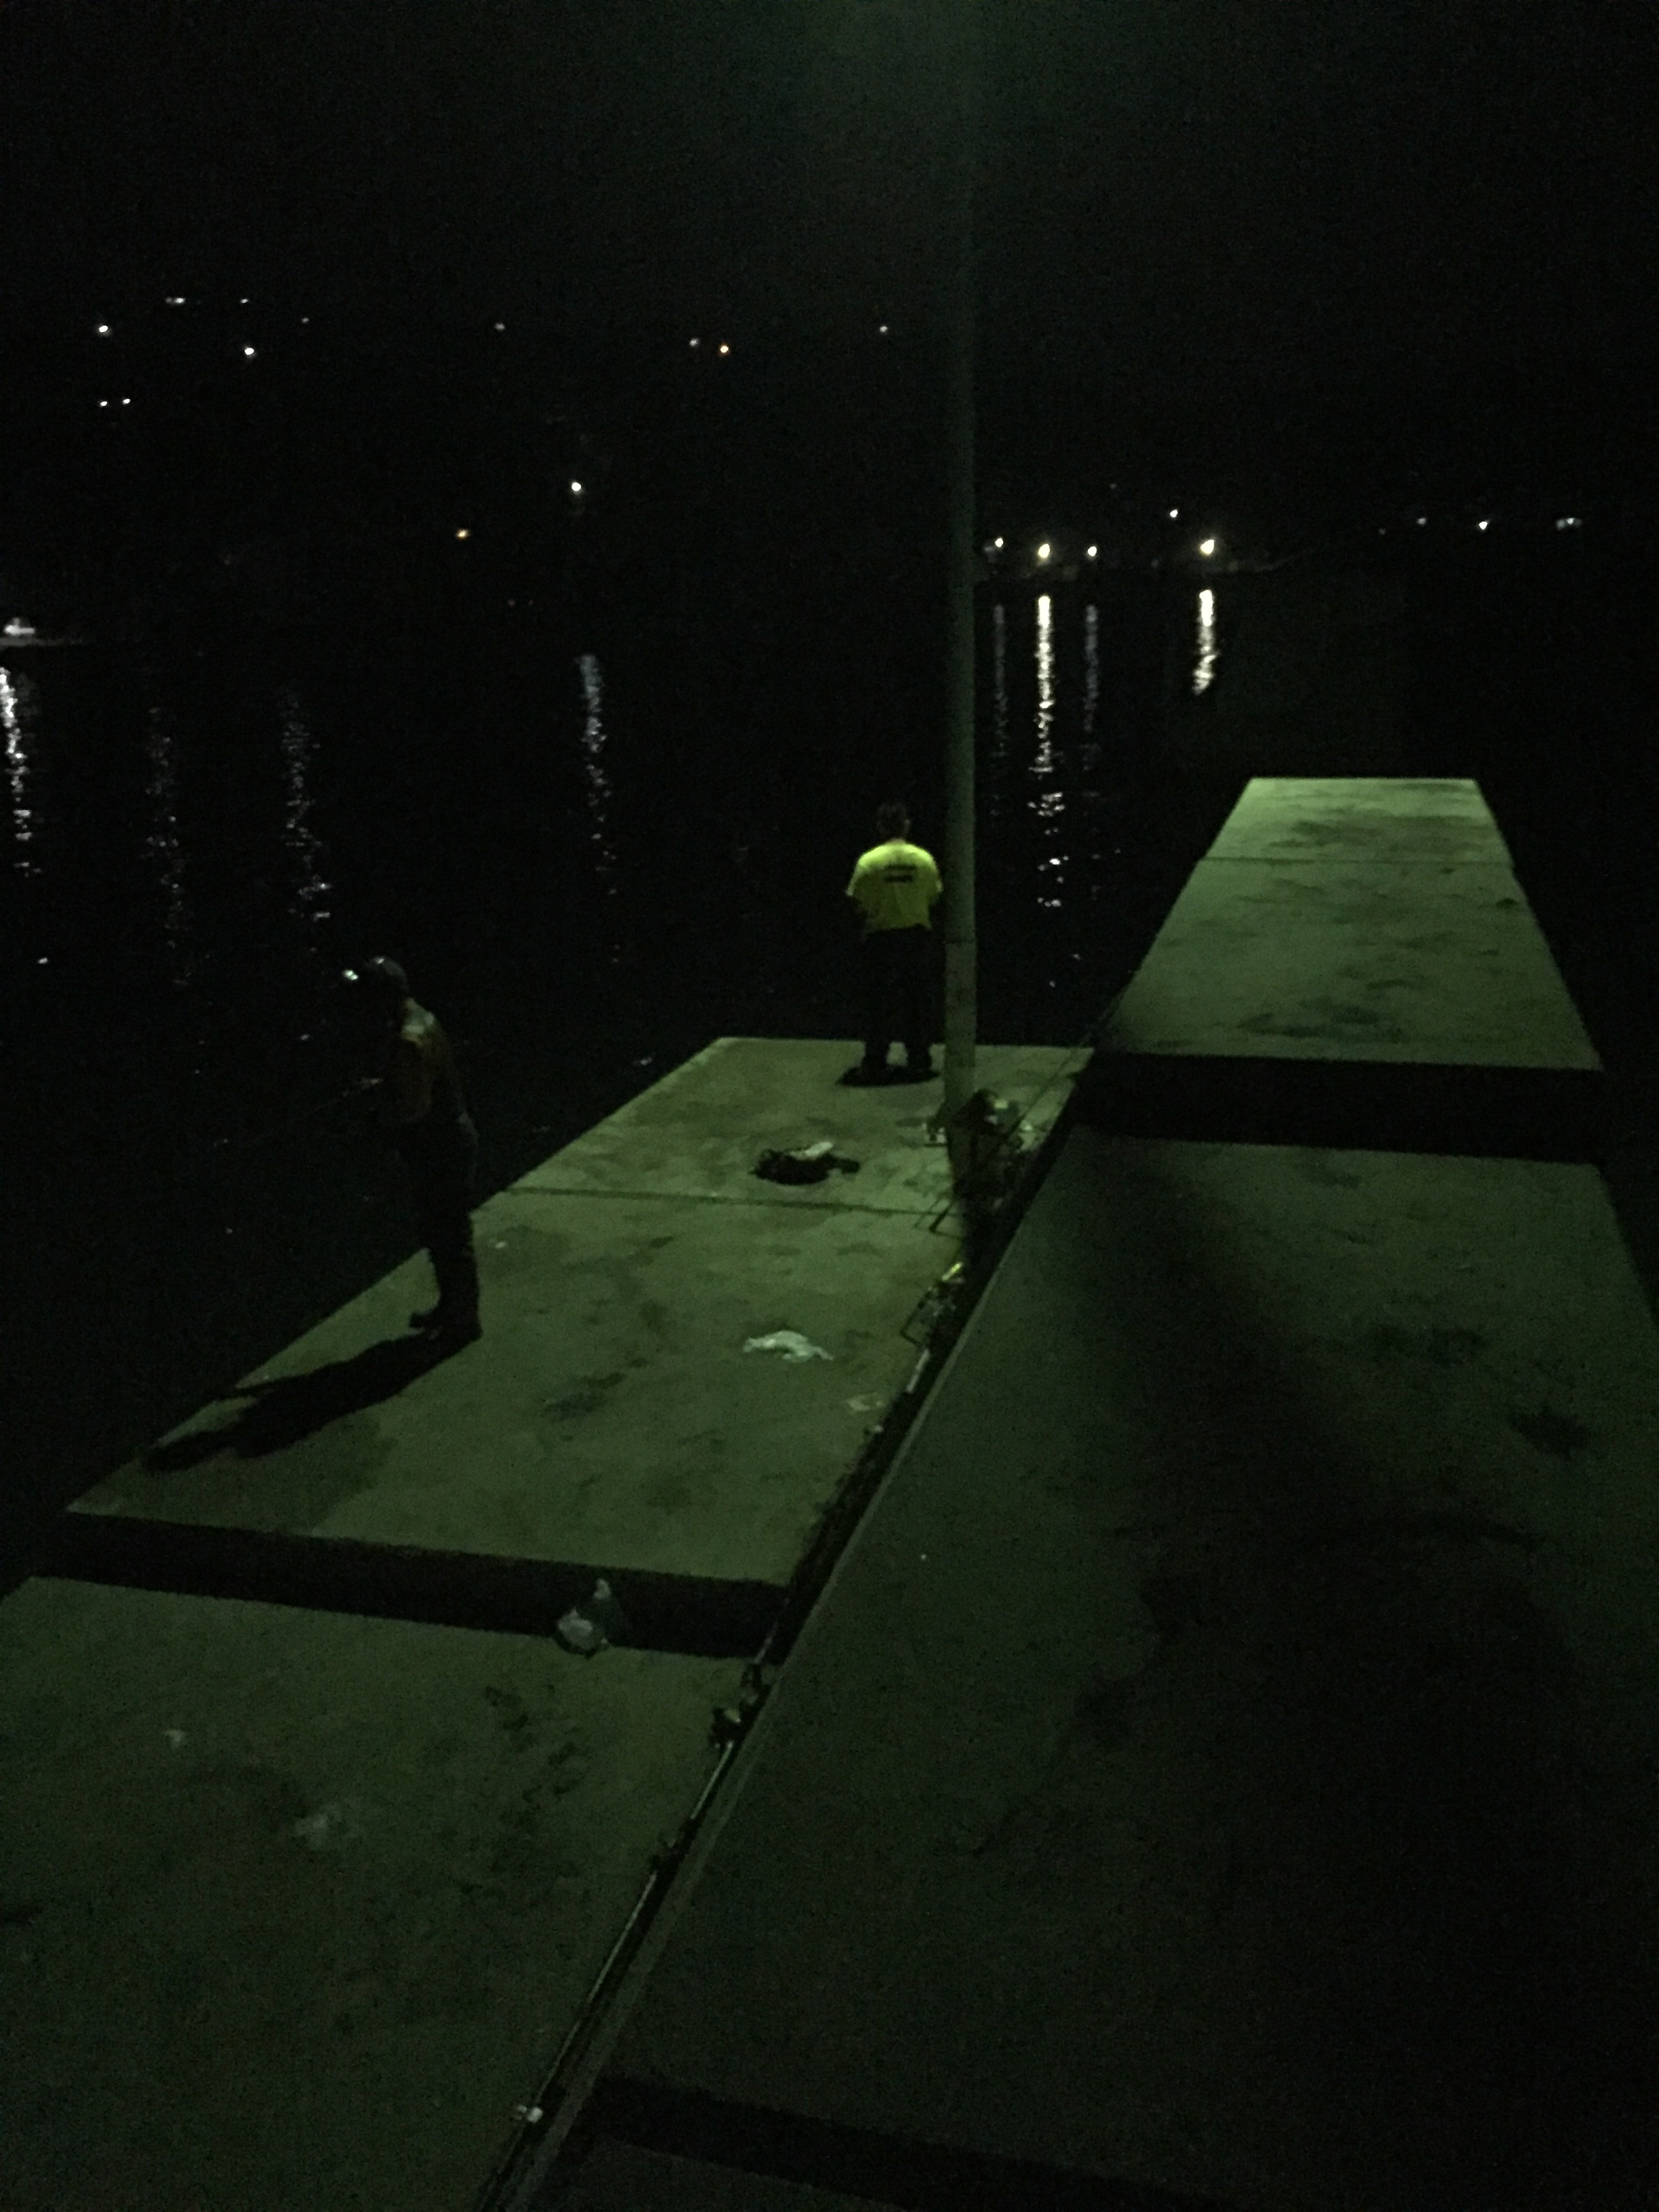 丸山漁港の釣り場紹介、淡路島南淡のエギングとタチウオ狙いにオススメの常夜灯のある漁港